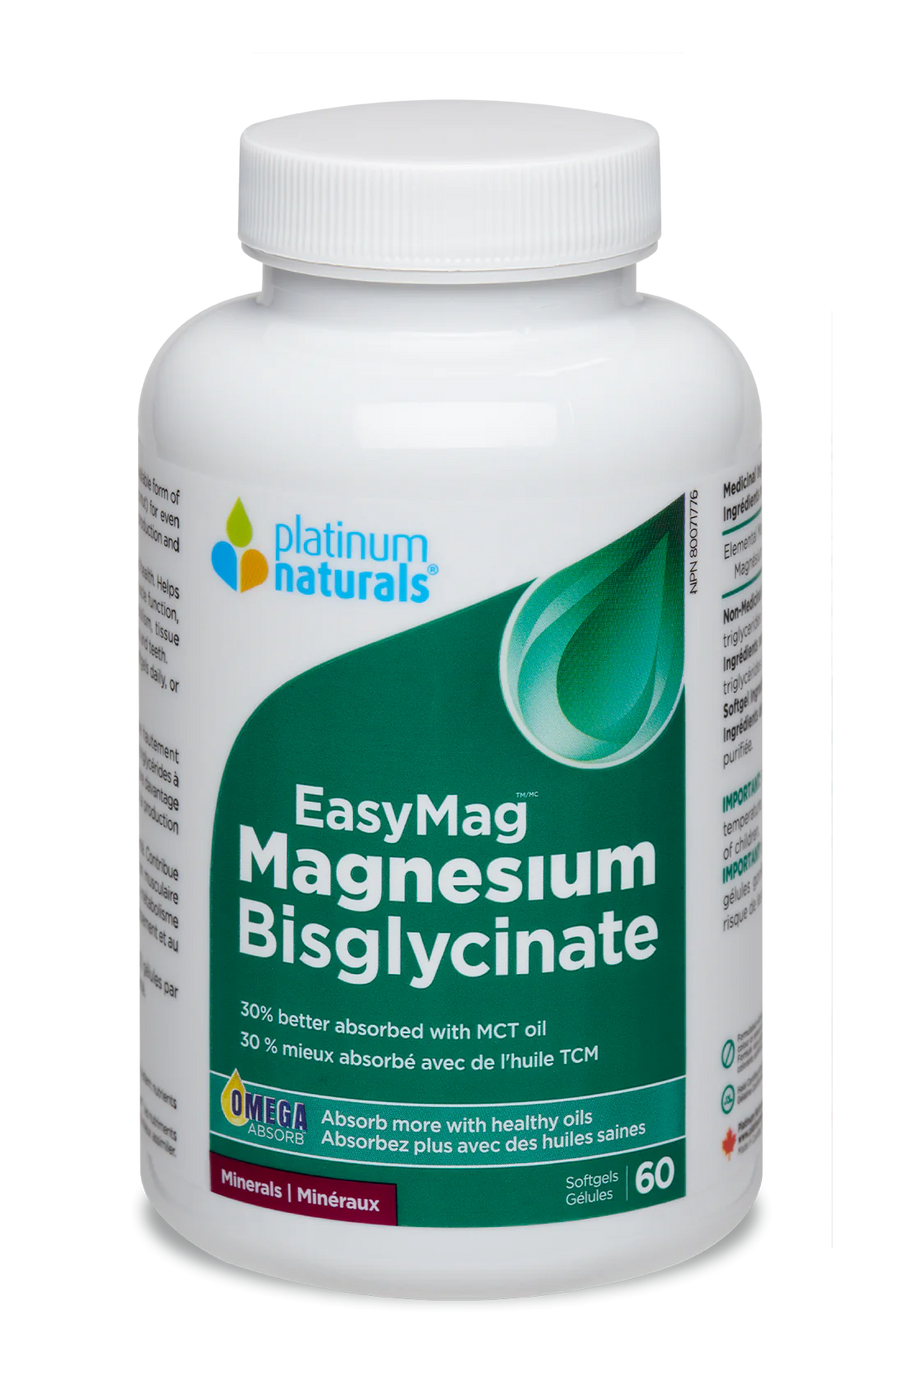 Platinum Naturals EasyMag Magnesium Bisglycinate 60 Softgels